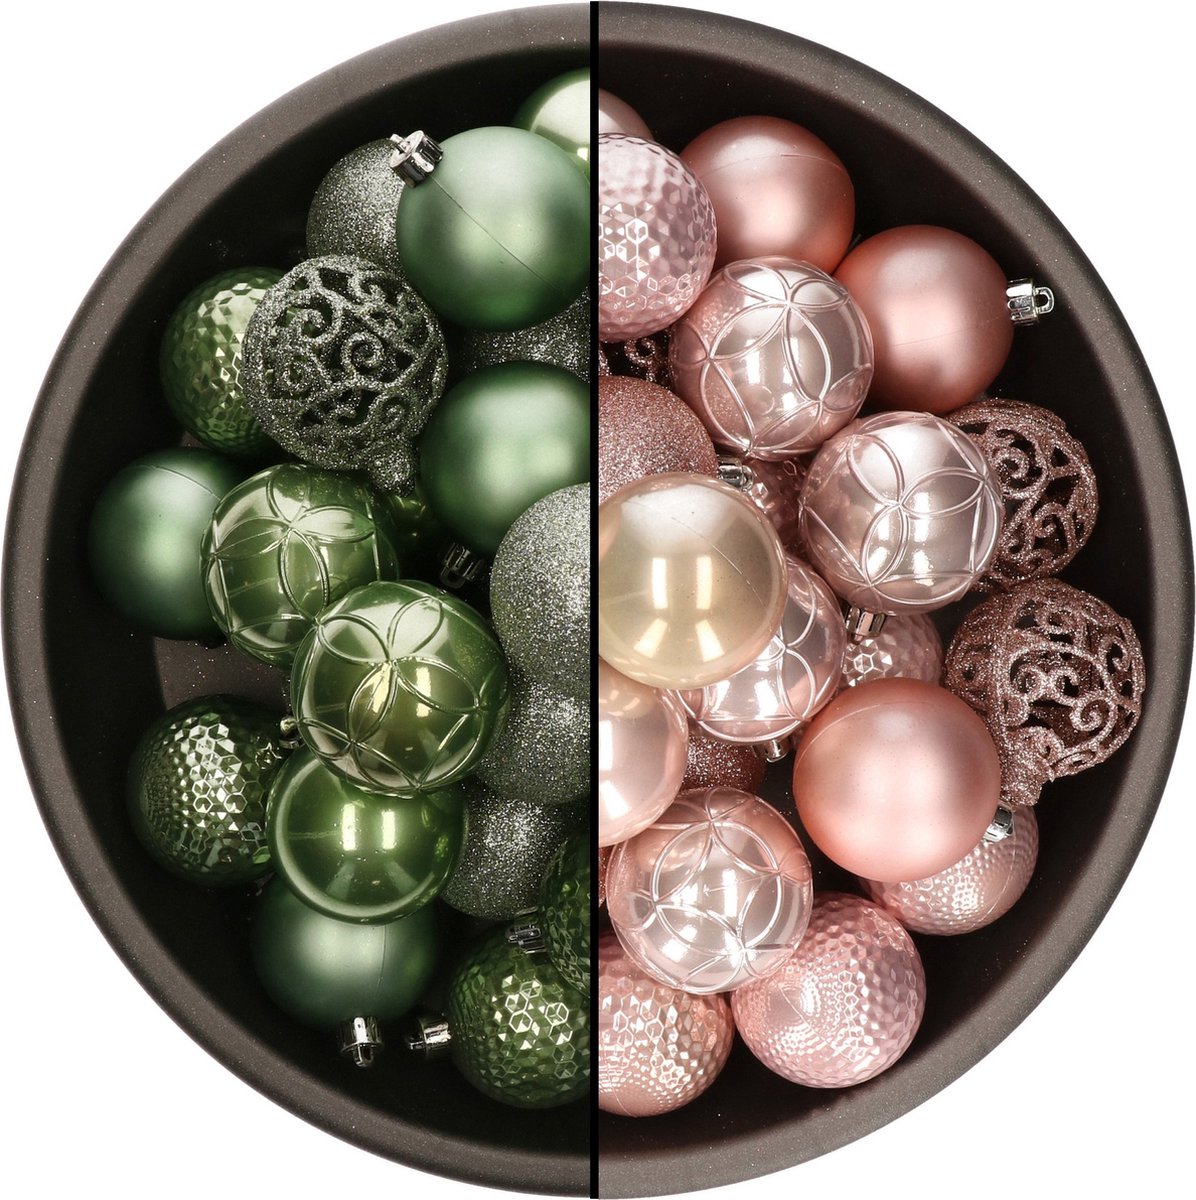 74x stuks kunststof kerstballen mix salie groen en lichtroze 6 cm - Onbreekbare kerstballen - Kerstversiering